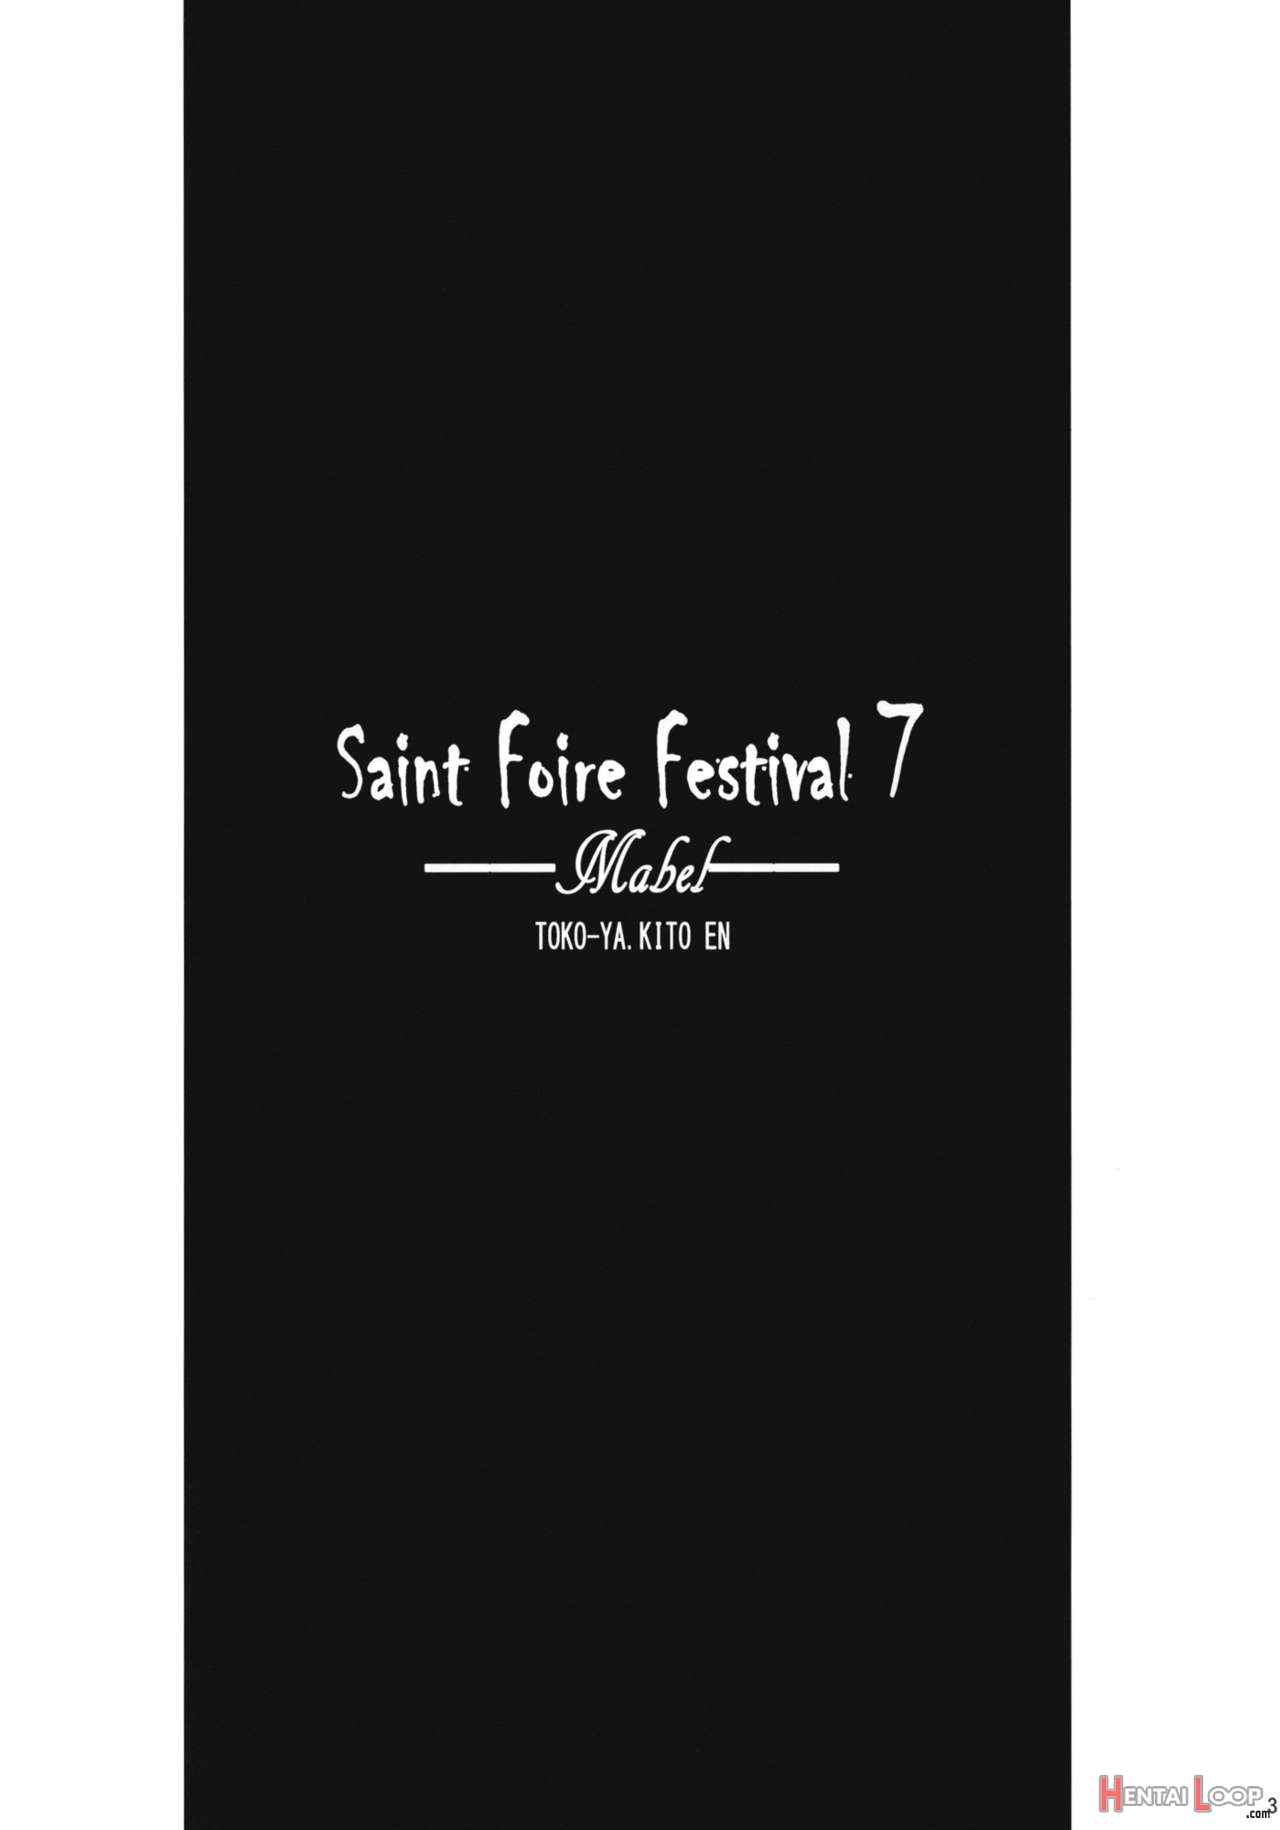 Saint Foire Festival 7 Mabel page 2